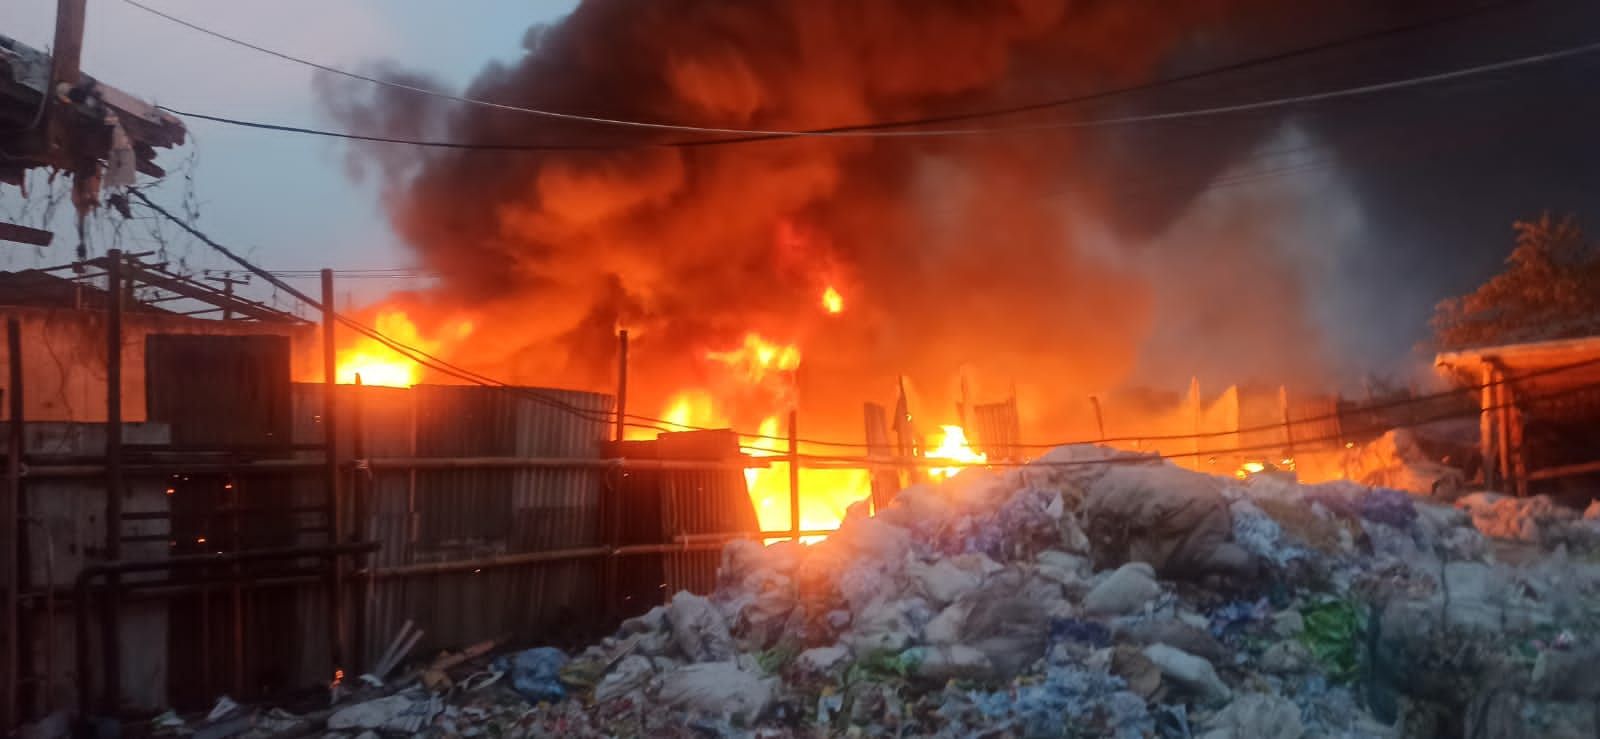 Kebakaran pabrik plastik di Cigondewah Hilir Kecamatan Margaasih Kabupaten Bandung sore hari ini Jumat, 14 Oktober 2022.